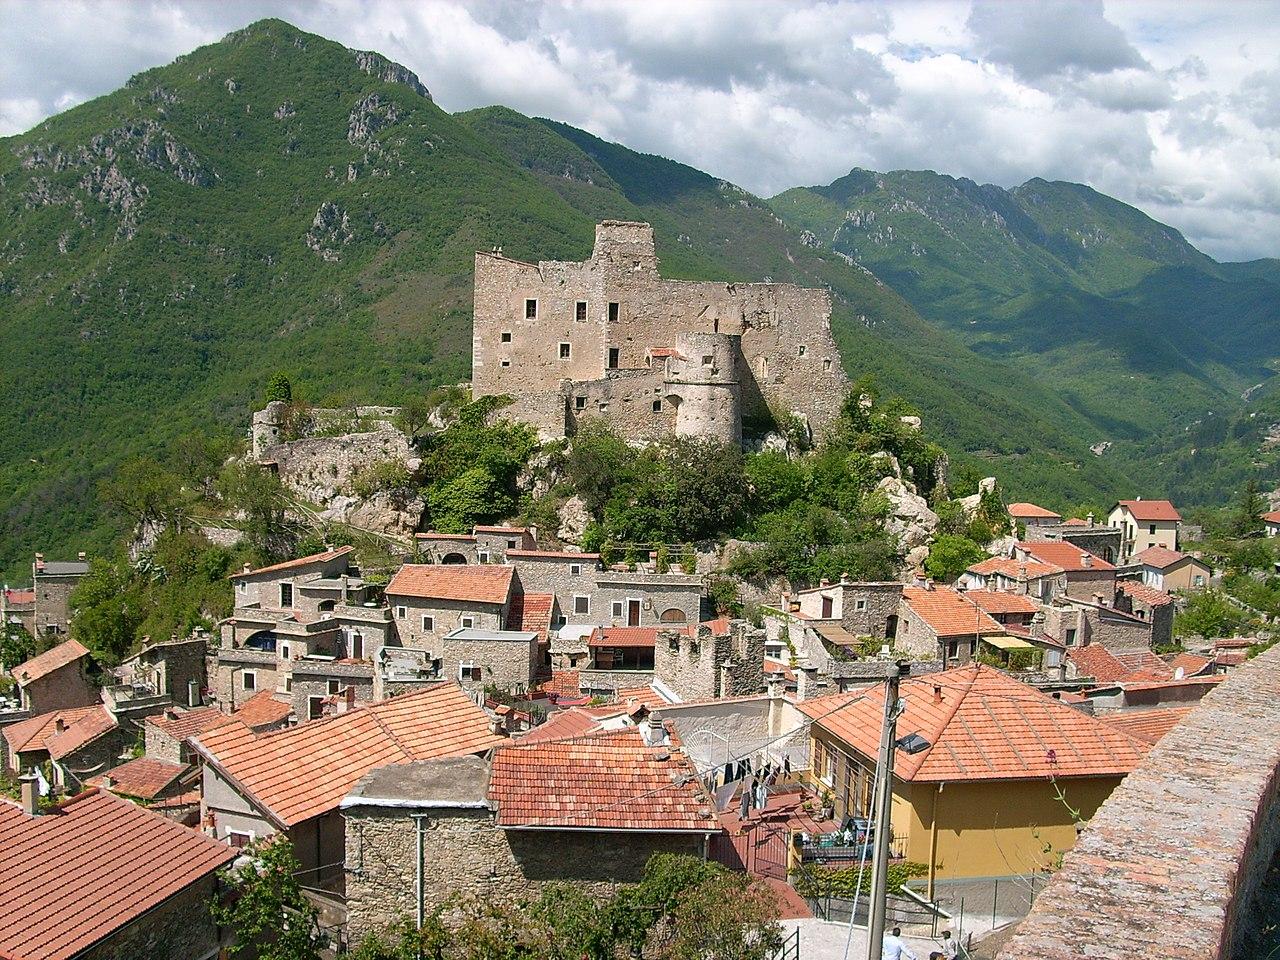 Castelvecchio di Rocca Barbena, Italy